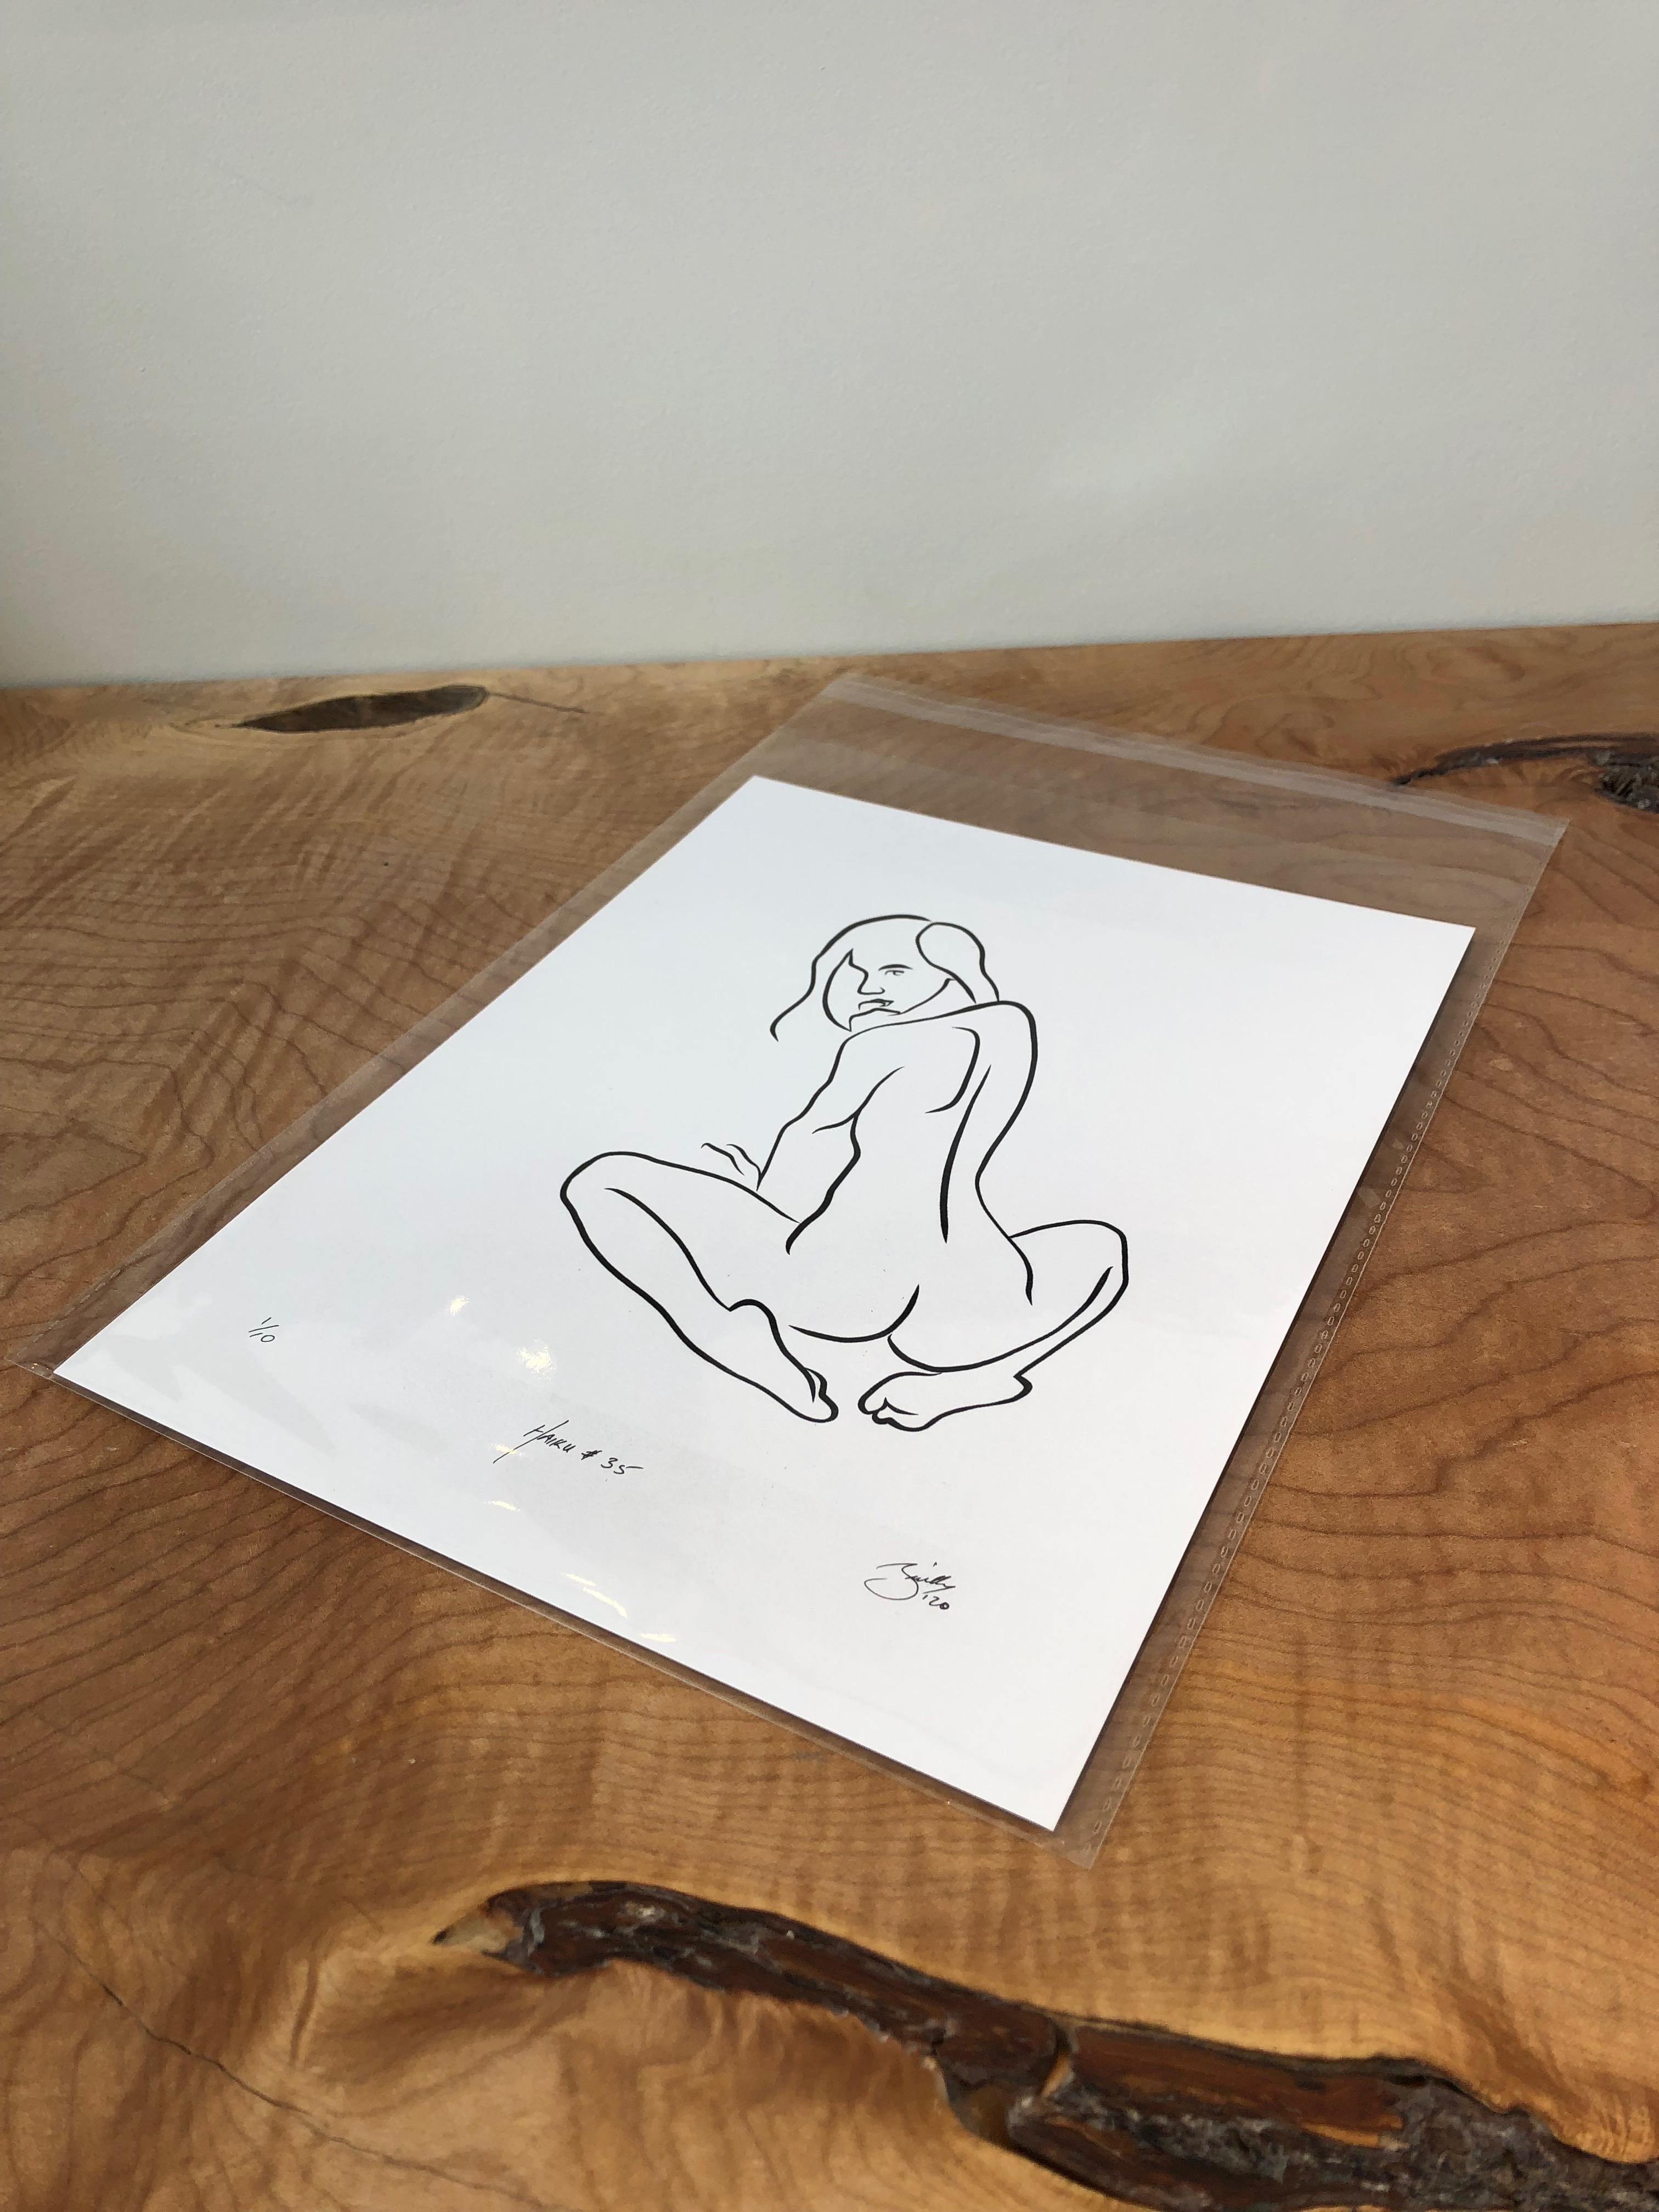 Haiku #35 - Digital Vector Drawing Seated Female Nude Woman Figure Looking Back - Print de Michael Binkley